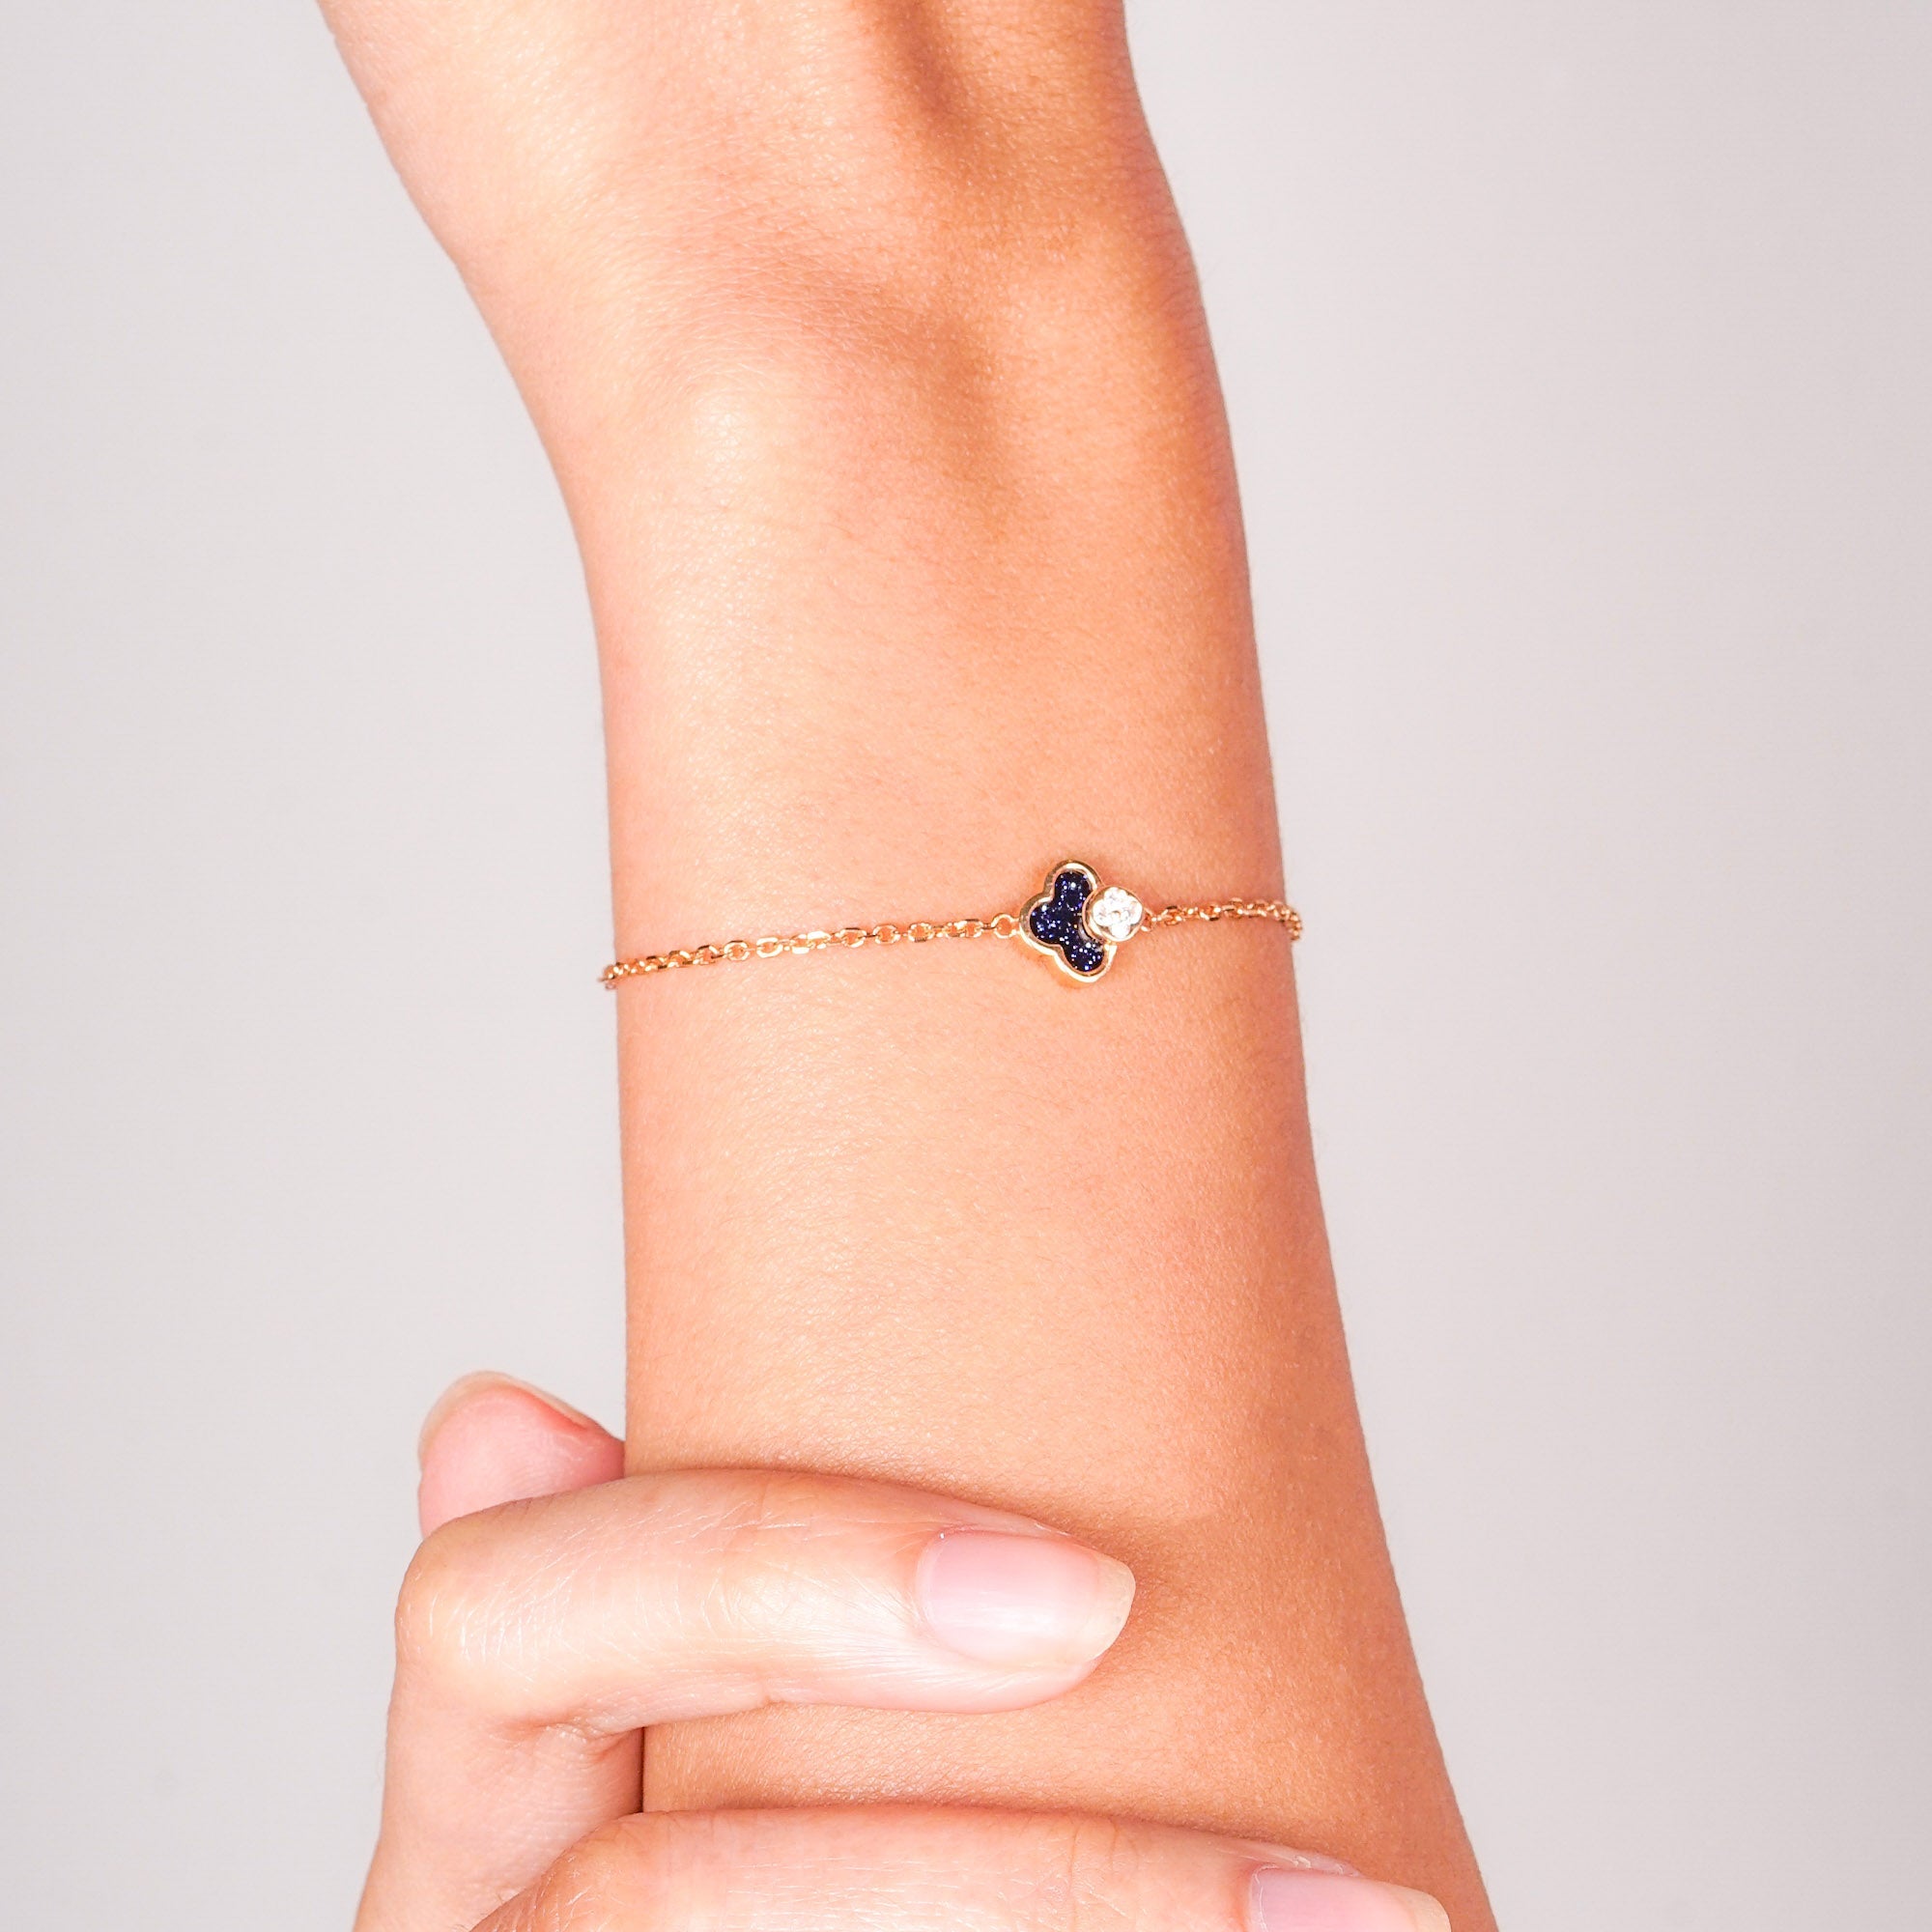 Lyra Gold Bracelet - Milky Way - Juene Jewelry